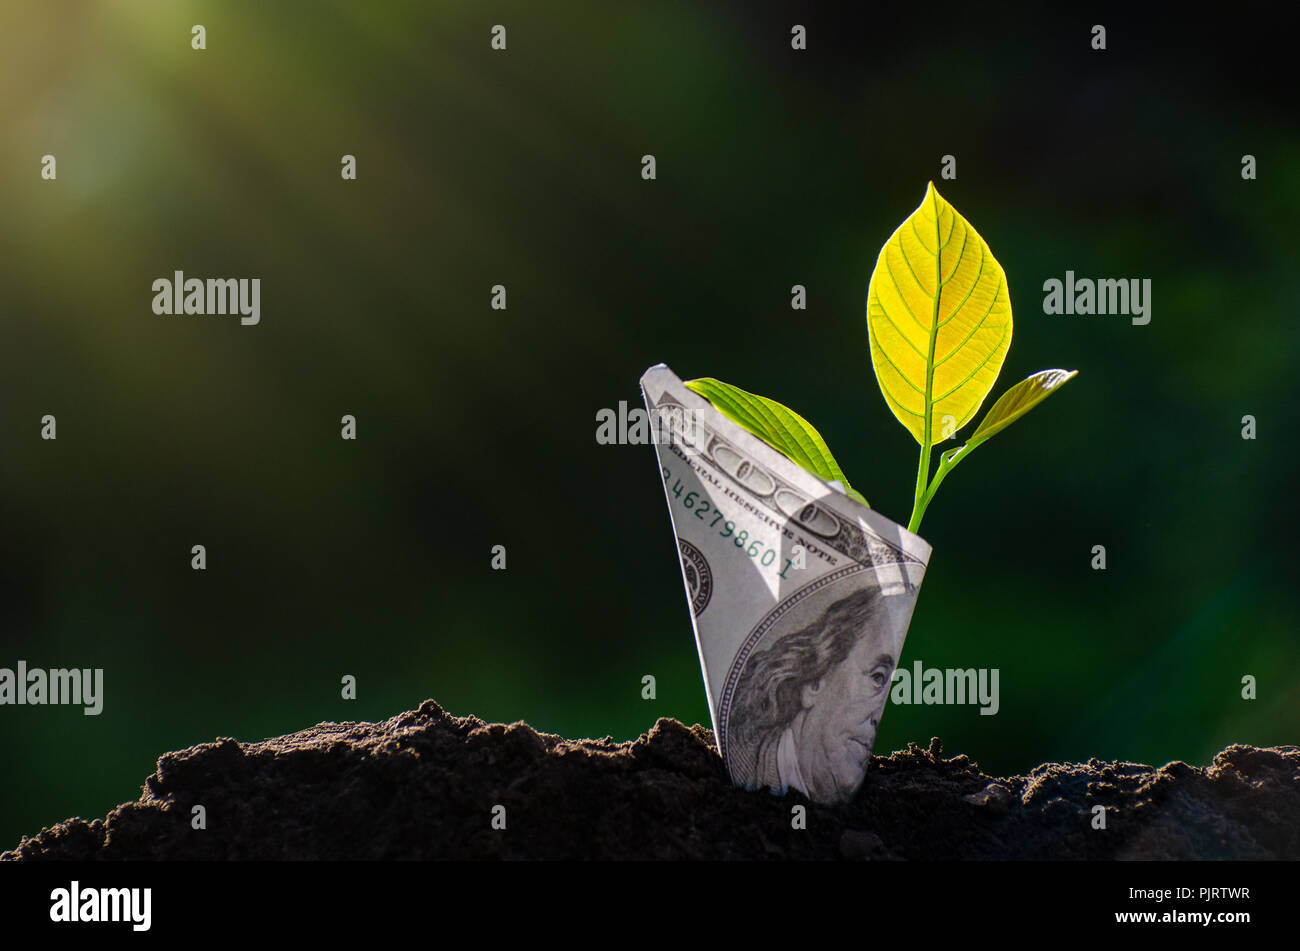 Billets de banque de l'image arbre remarque avec la culture d'espèces végétales sur le dessus pour les affaires de fond naturel vert l'économie d'argent et d'investissement concept financier Banque D'Images